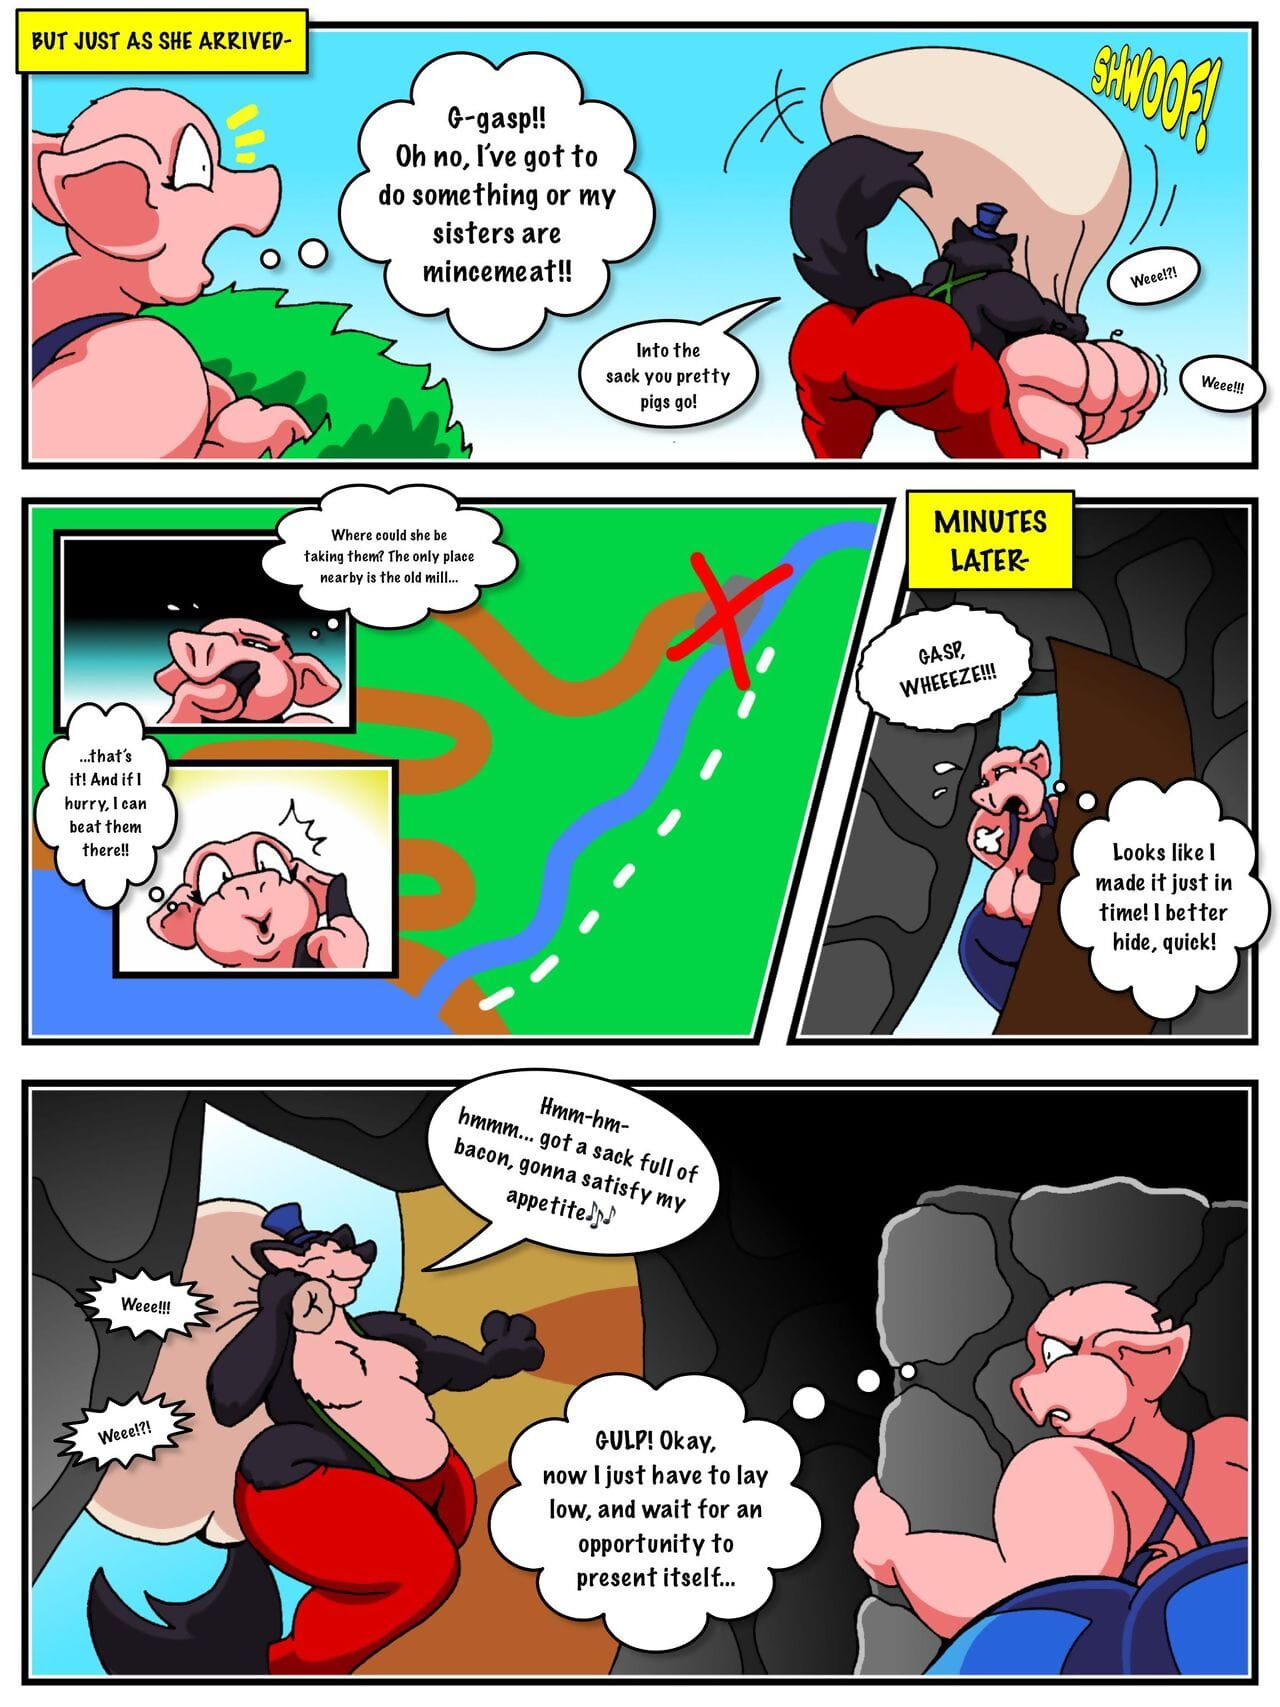 Three Pretty Piggies page 1